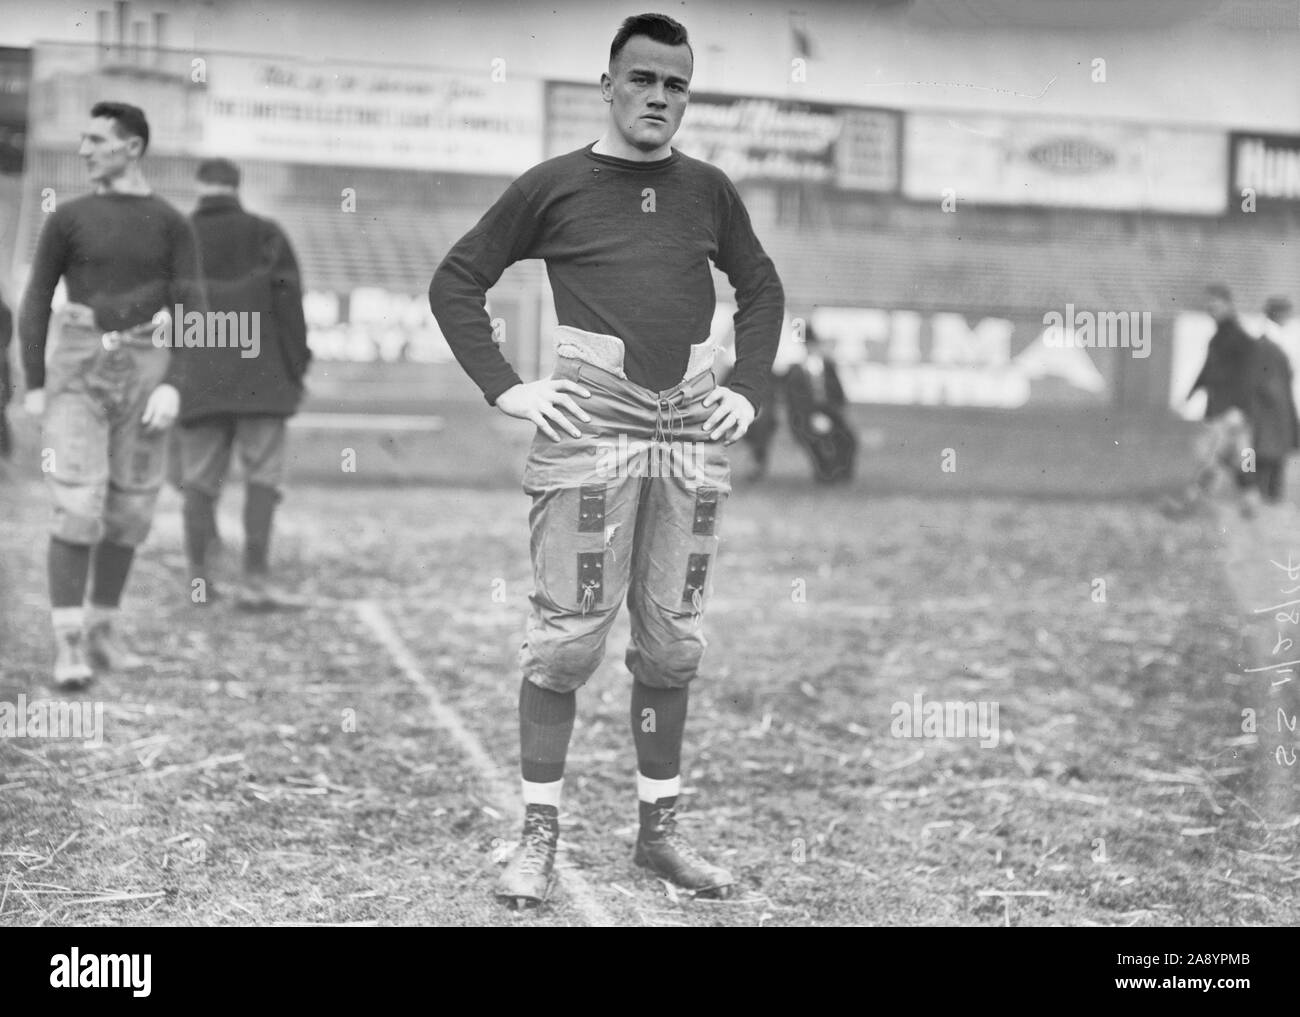 Fotografía muestra Burleigh Cruikshank, un jugador de fútbol americano para Washington & Jefferson College, antes de un partido de fútbol americano contra la Universidad de Rutgers en el Polo Grounds en Nueva York el 28 de noviembre, 1914 Foto de stock